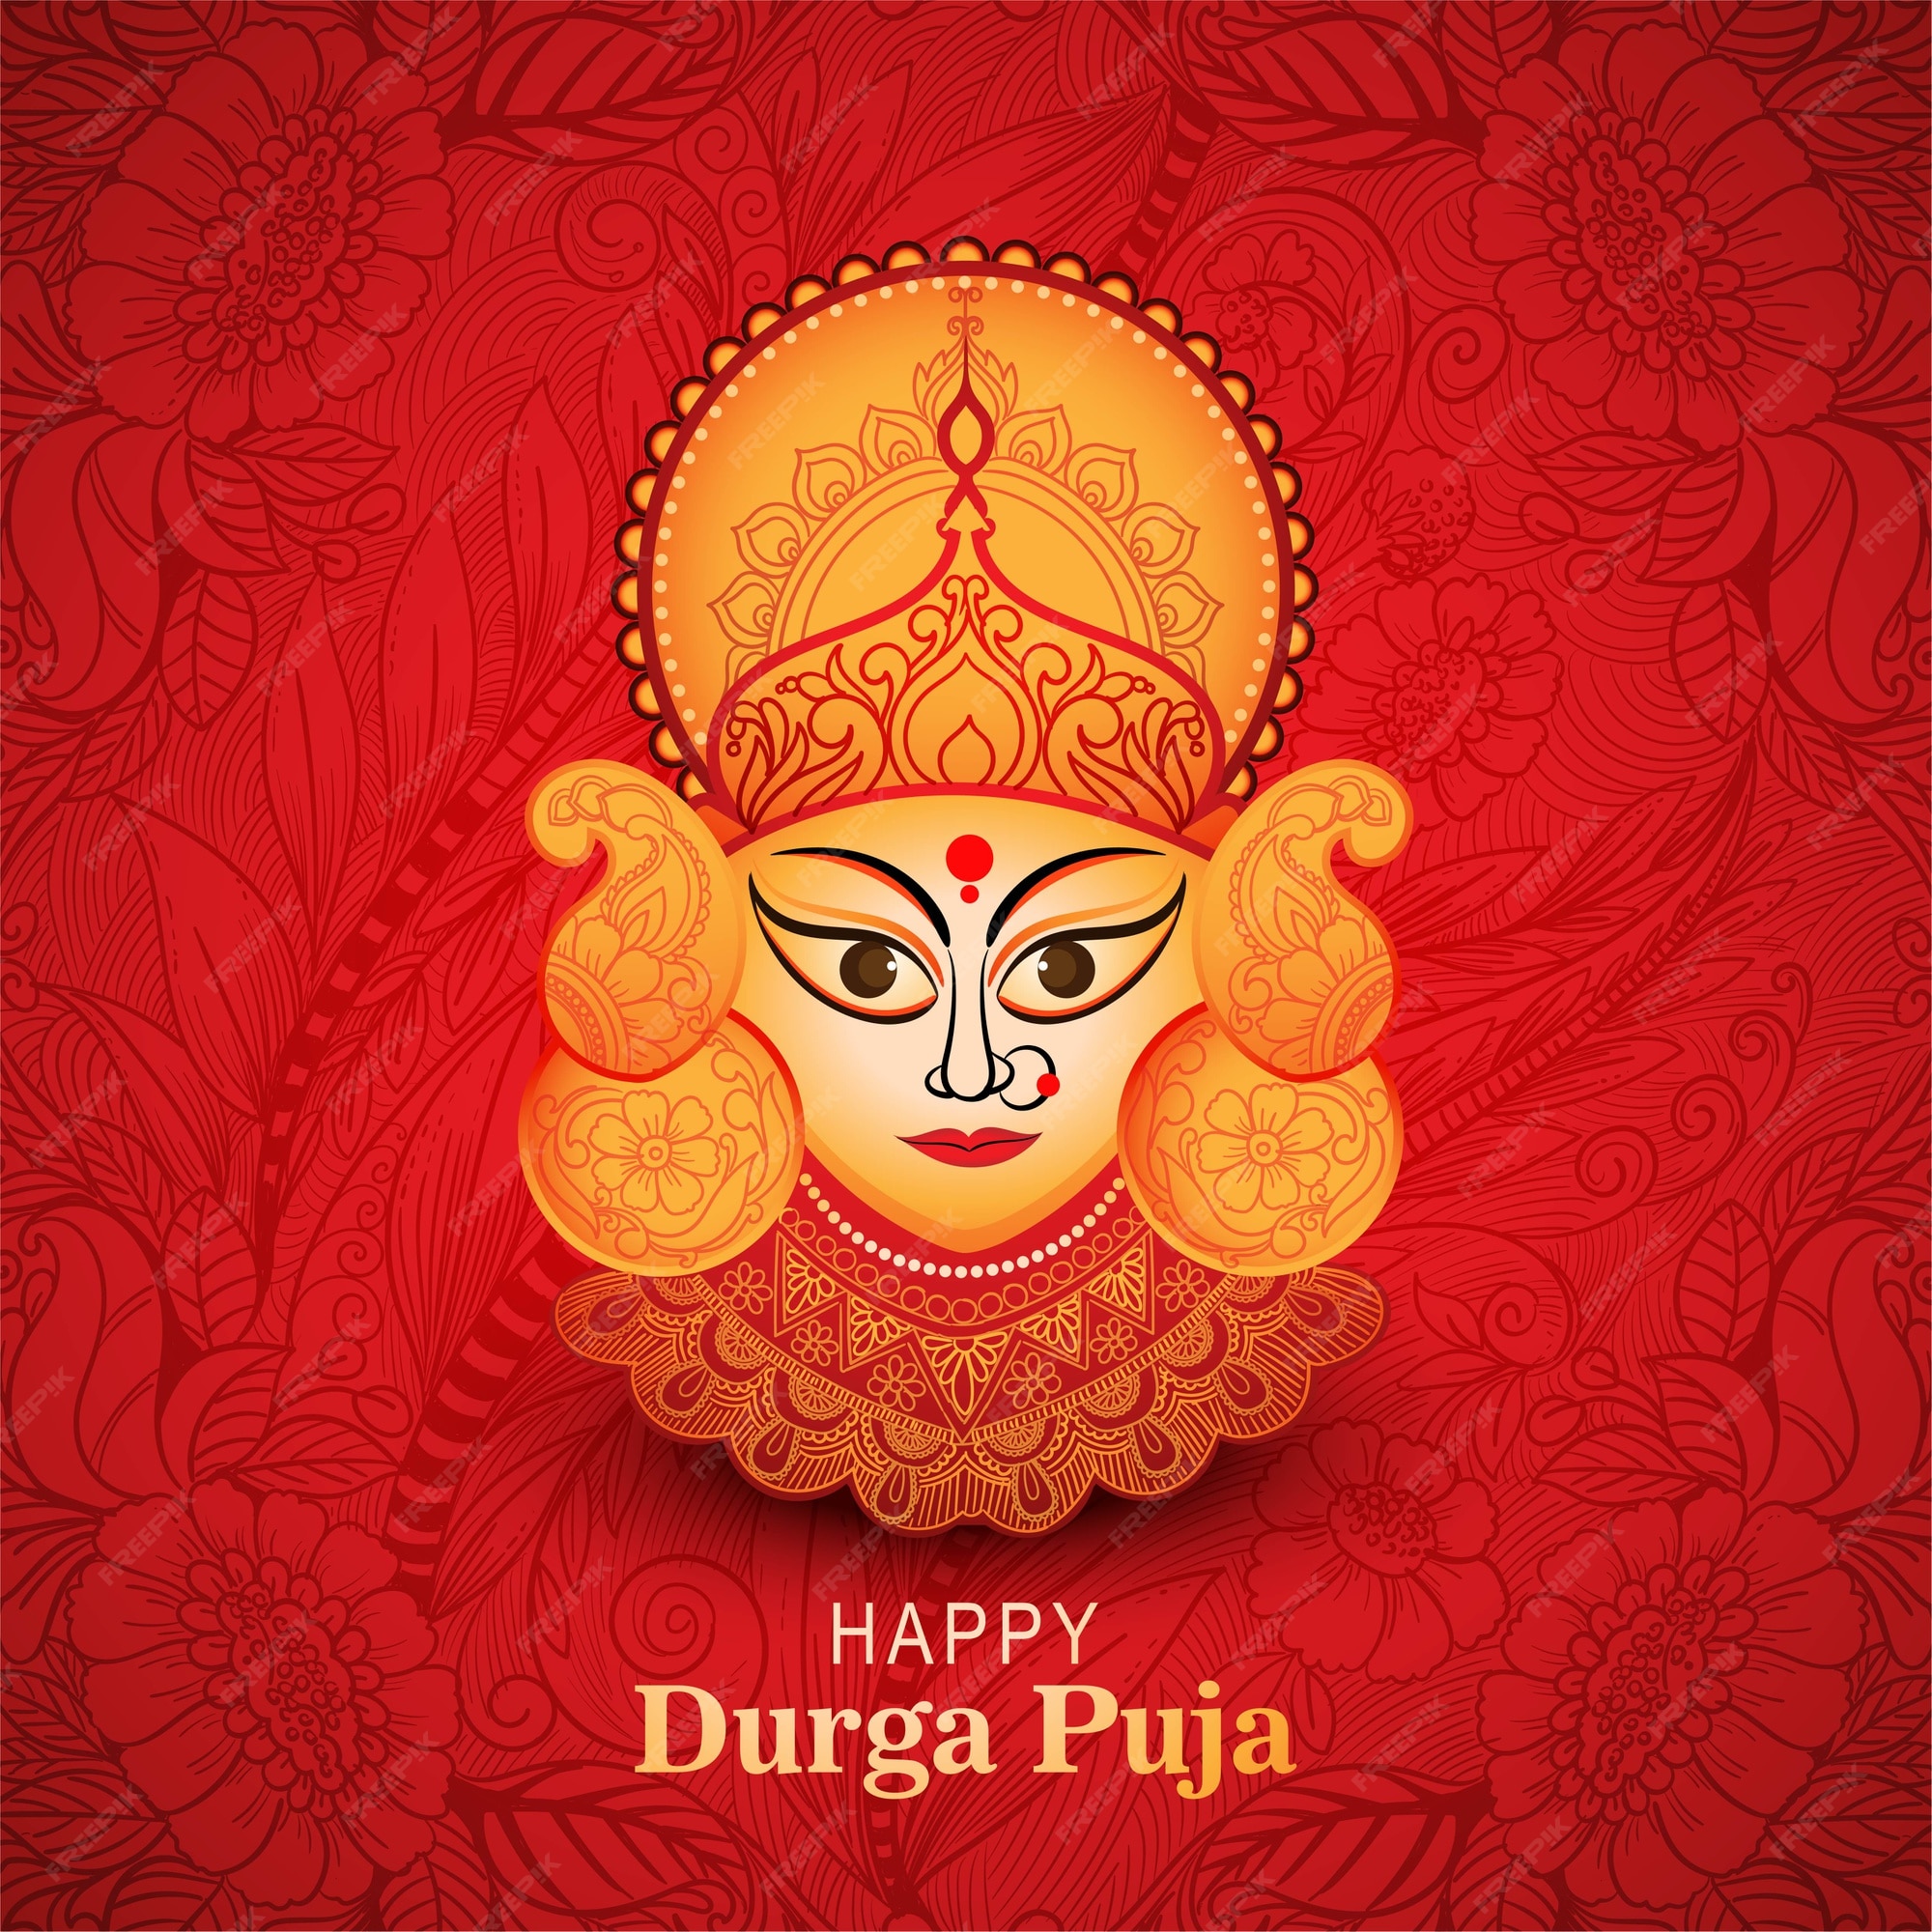 Durga Puja Images - Free Download on Freepik